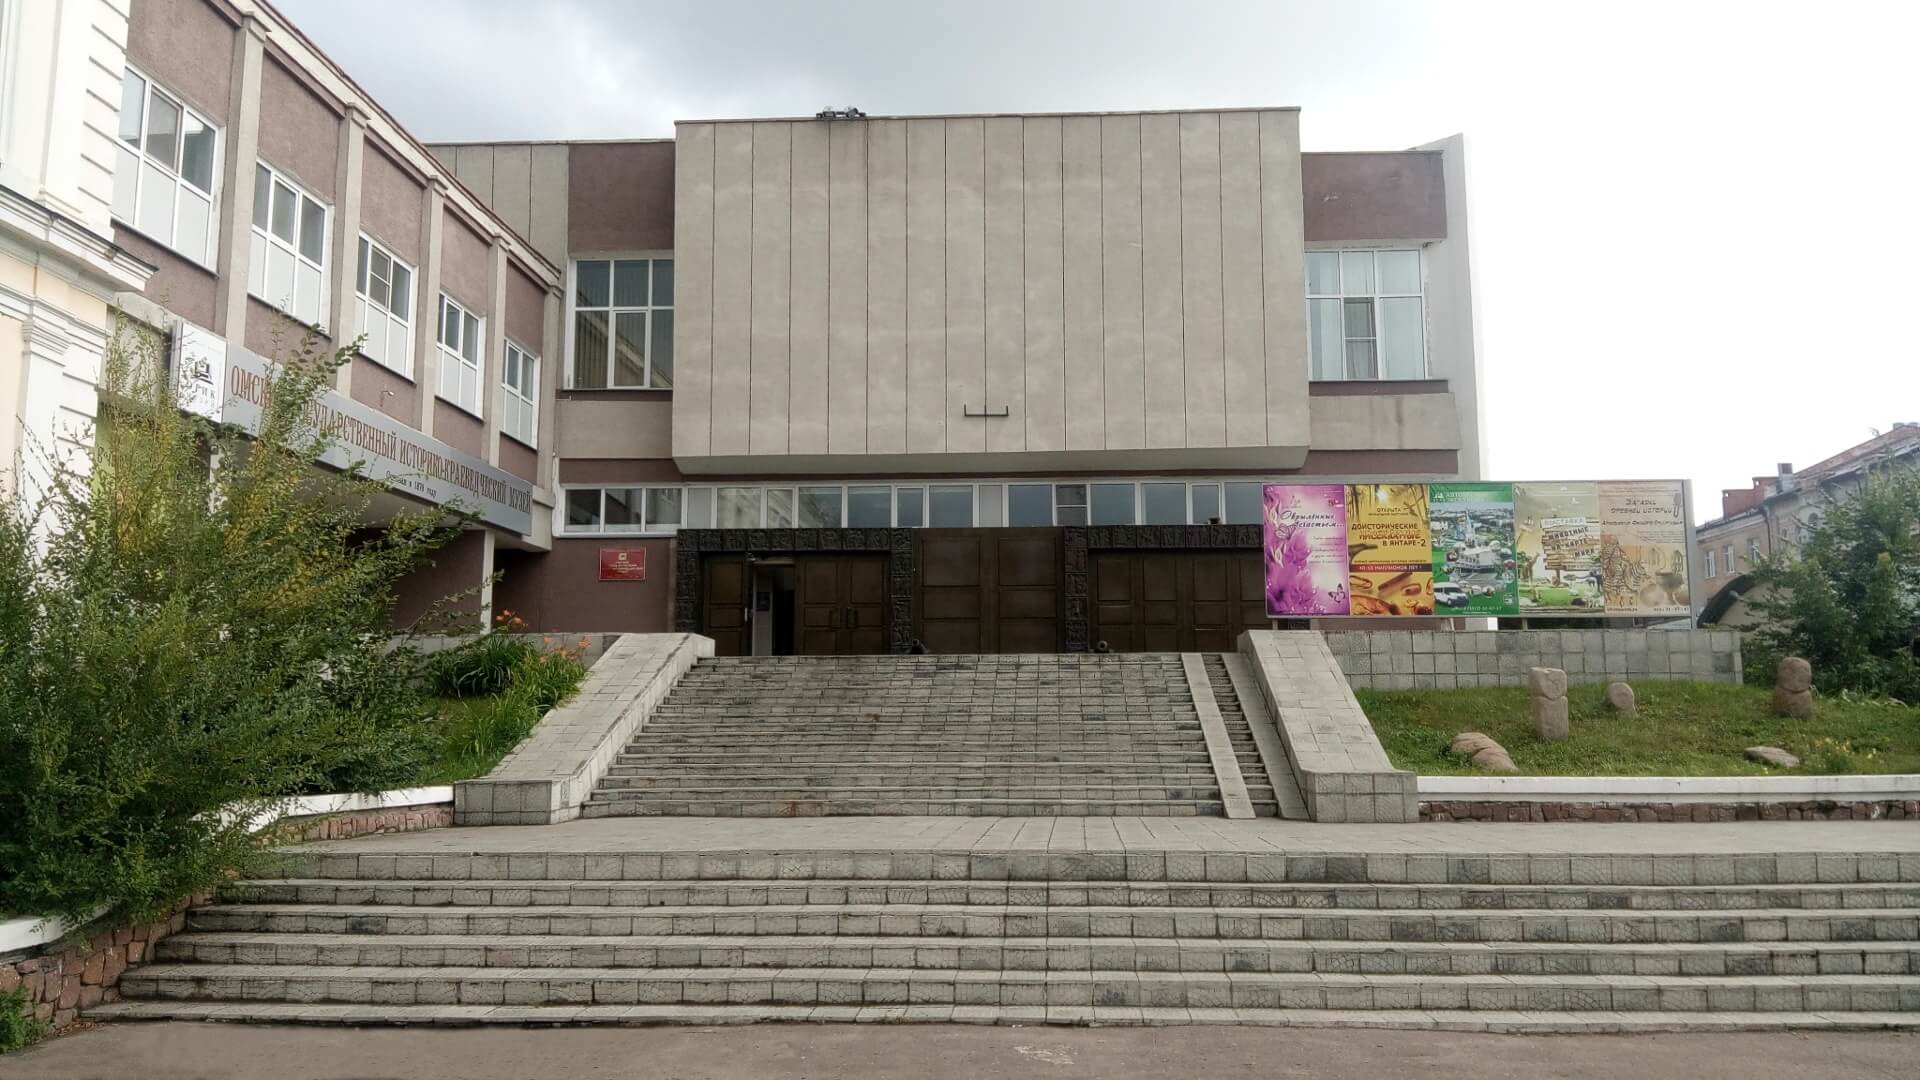 Омский государственный историко-краеведческий музей